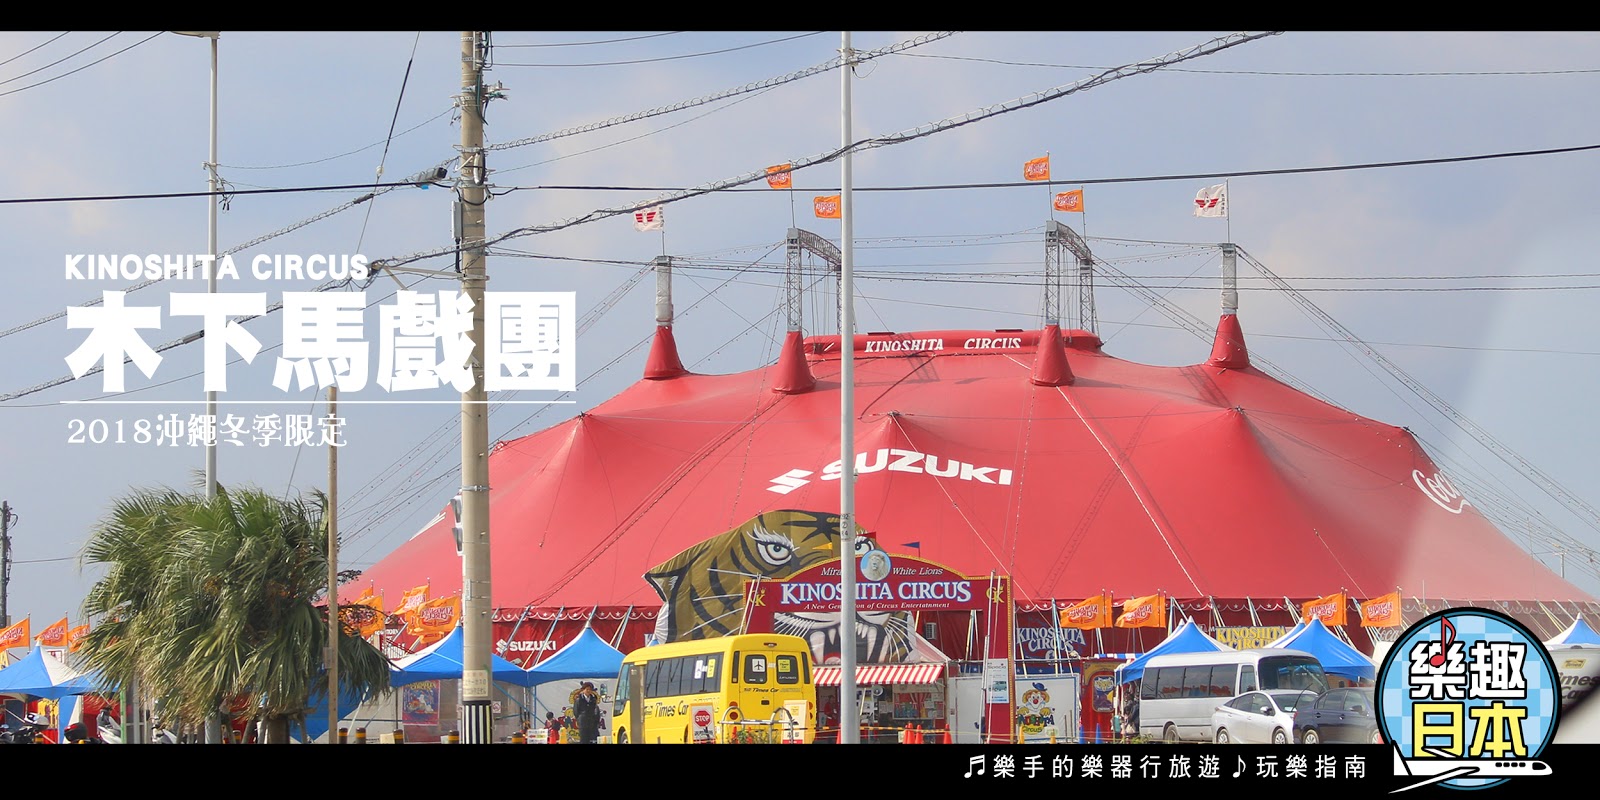 樂趣日本 在沖繩遇見世界級馬戲團 木下大馬戲團 Kinoshita Circus 高空特技 馬戲 雜耍 魔術 動物演出 鹿兒島巡迴即將接續登場